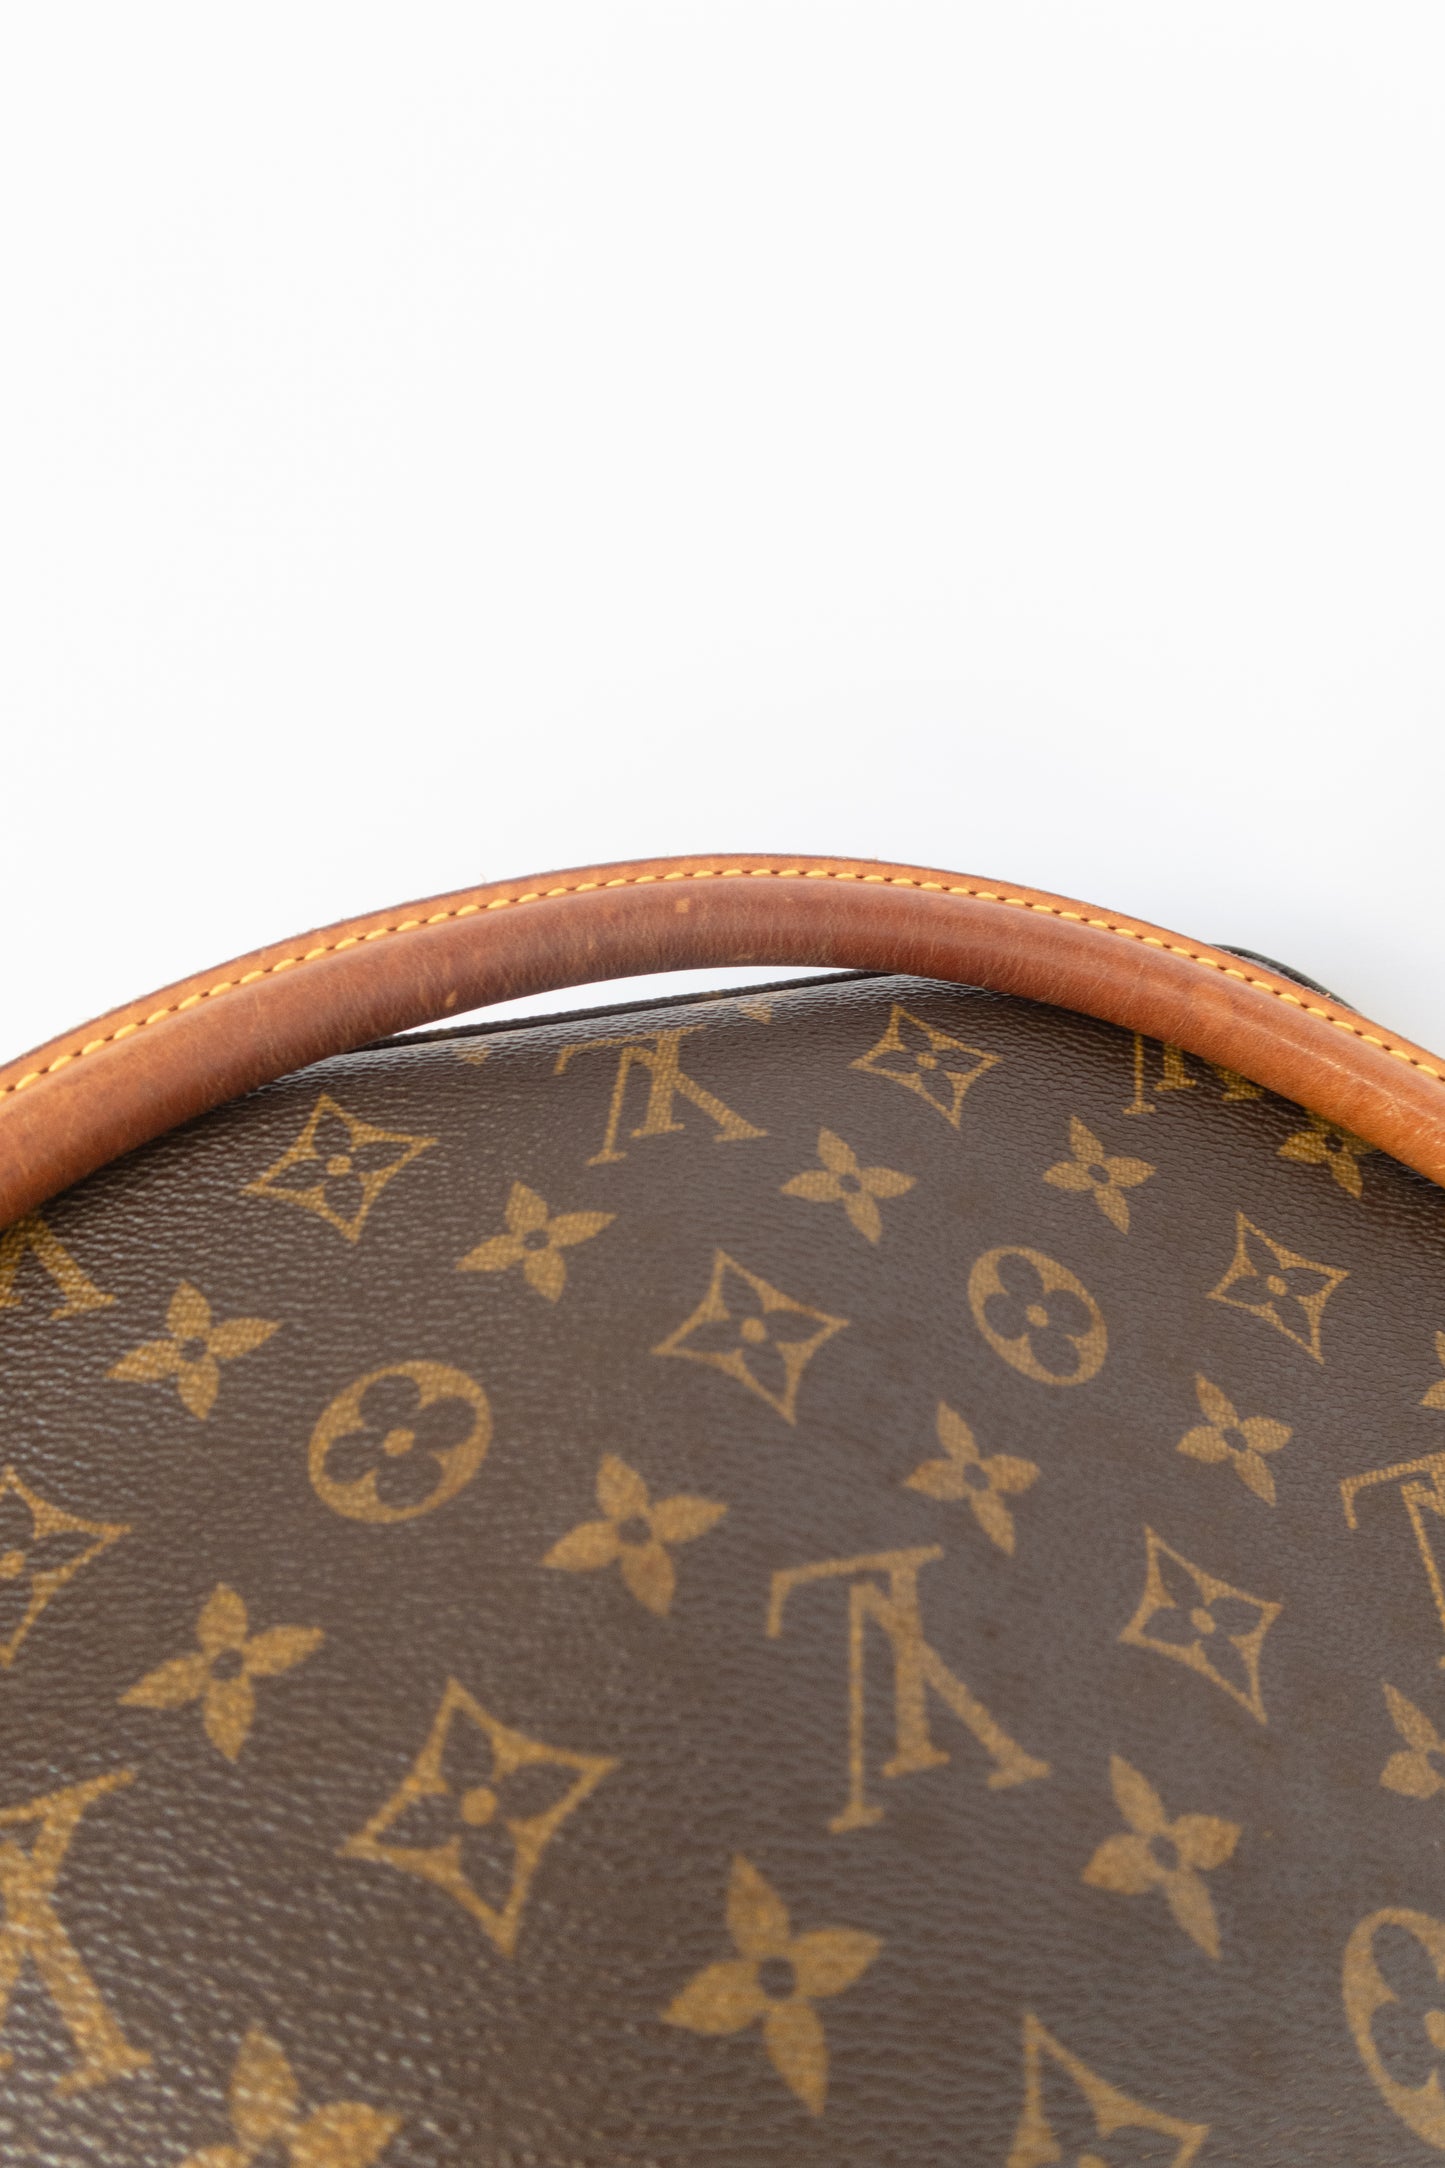 Louis Vuitton Looping MM Hobo Shoulder Bag